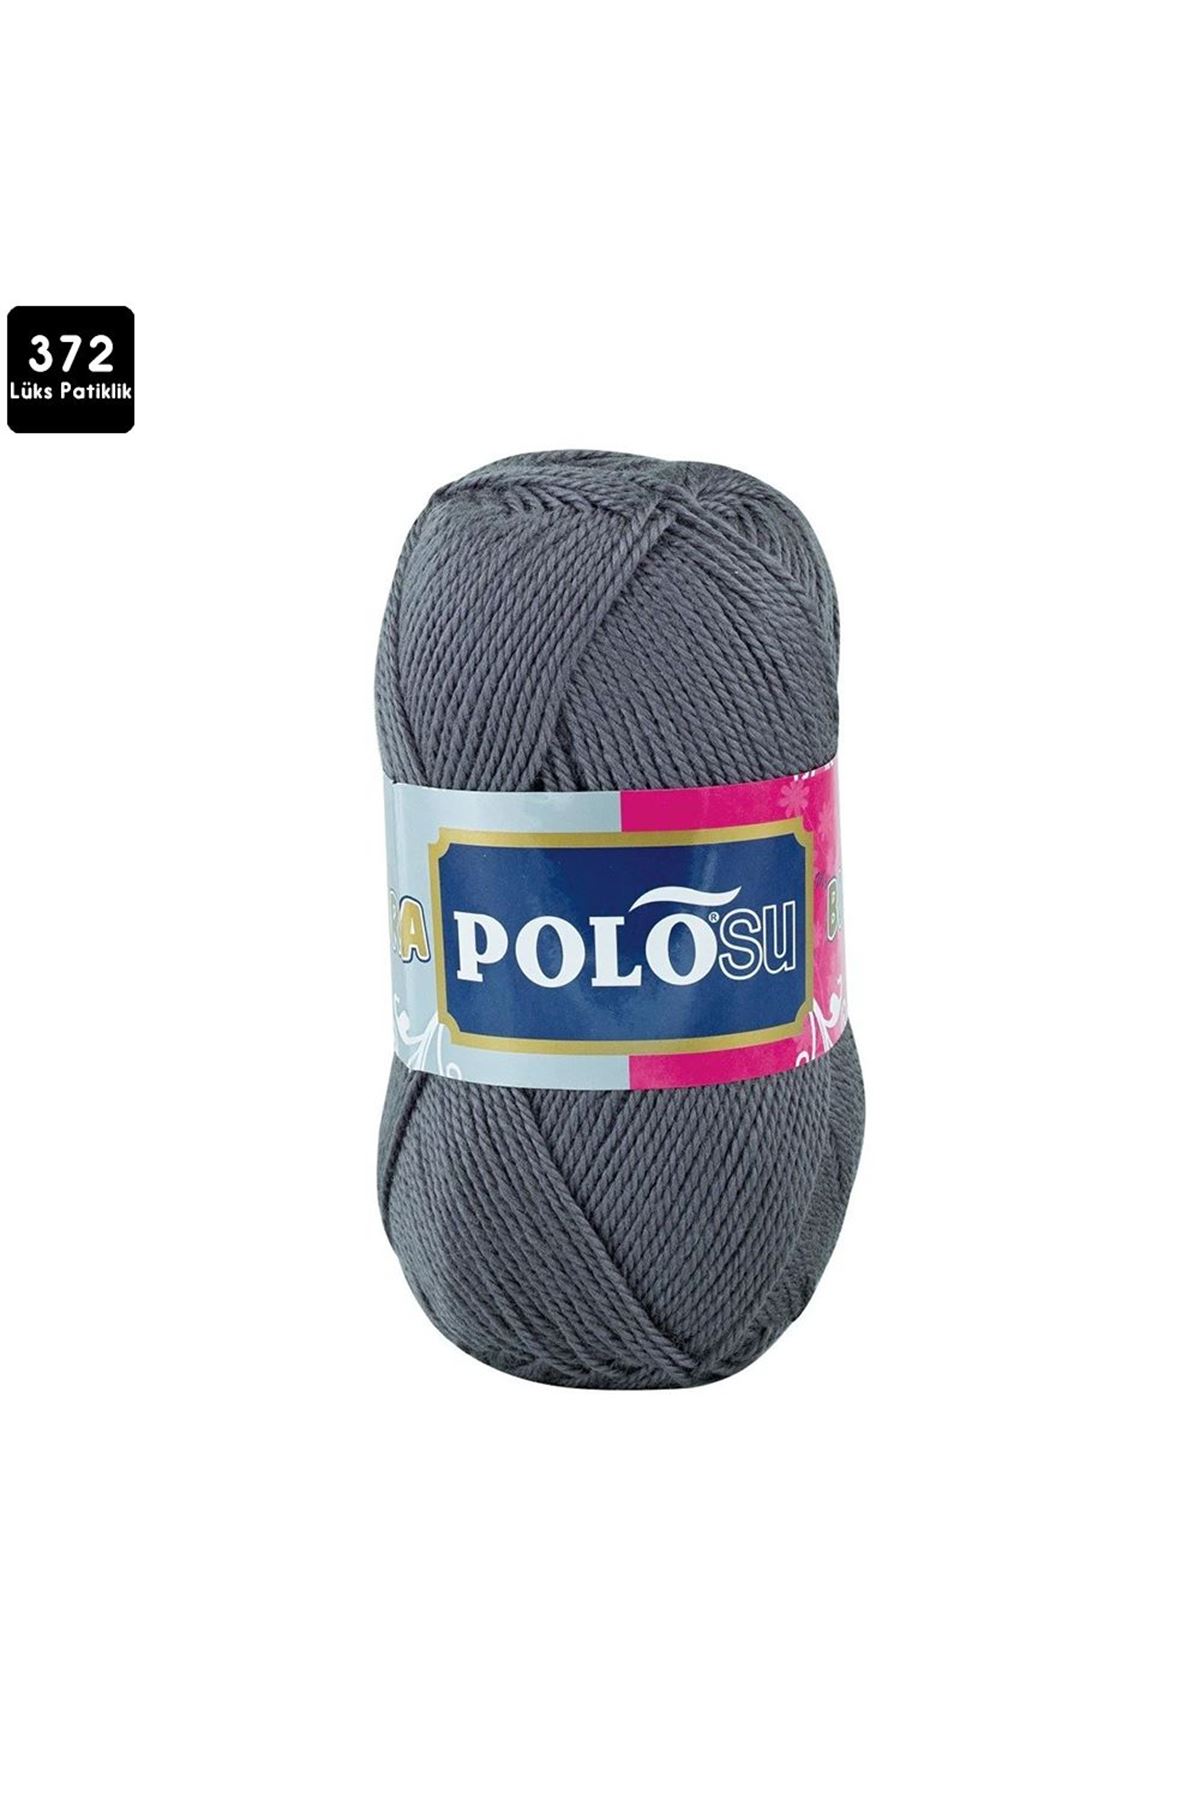 PoloSU Lüks Patiklik Renk No:372